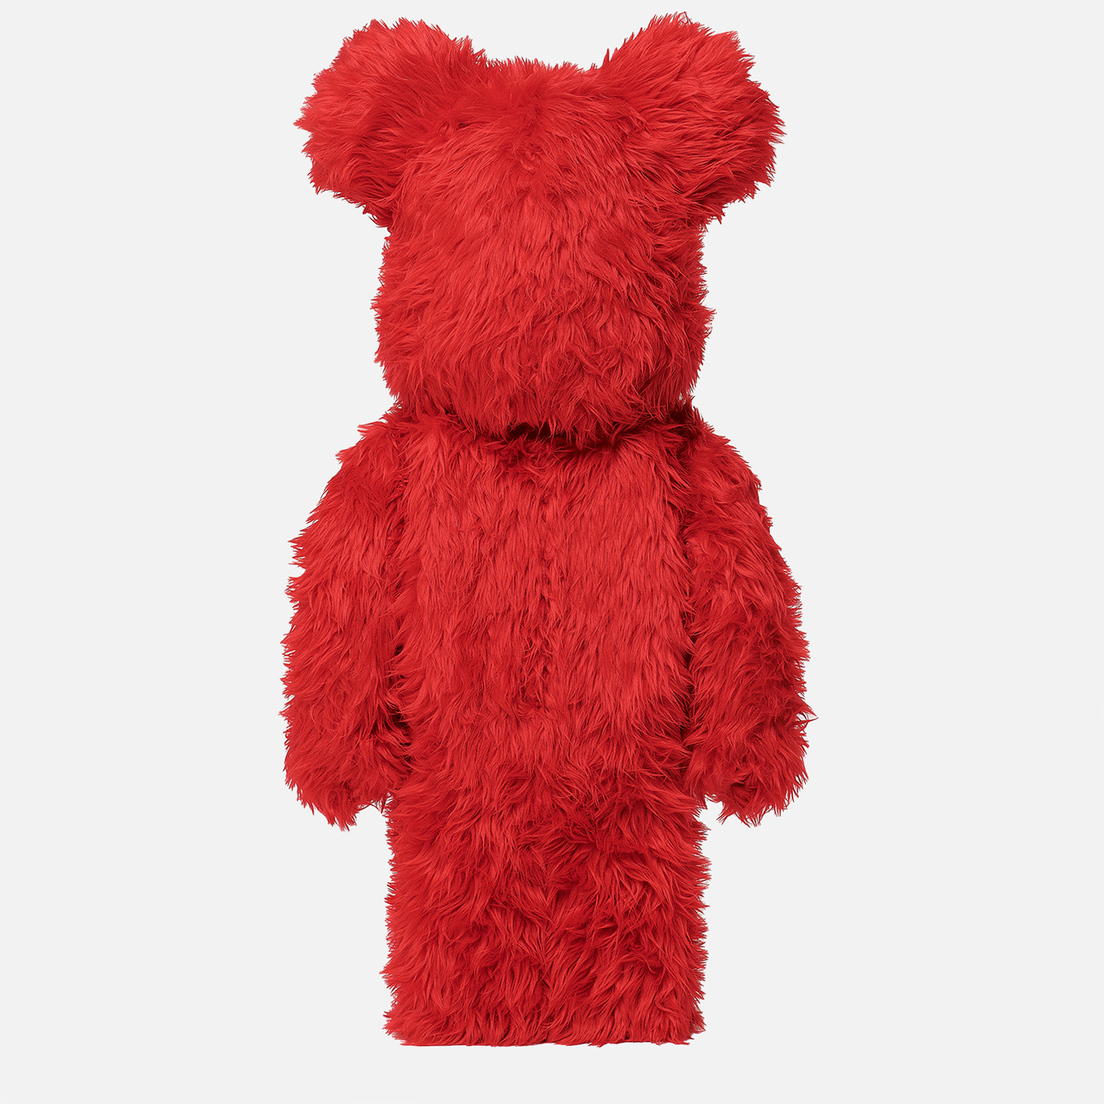 Medicom Toy Игрушка Bearbrick Elmo Costume 1000%